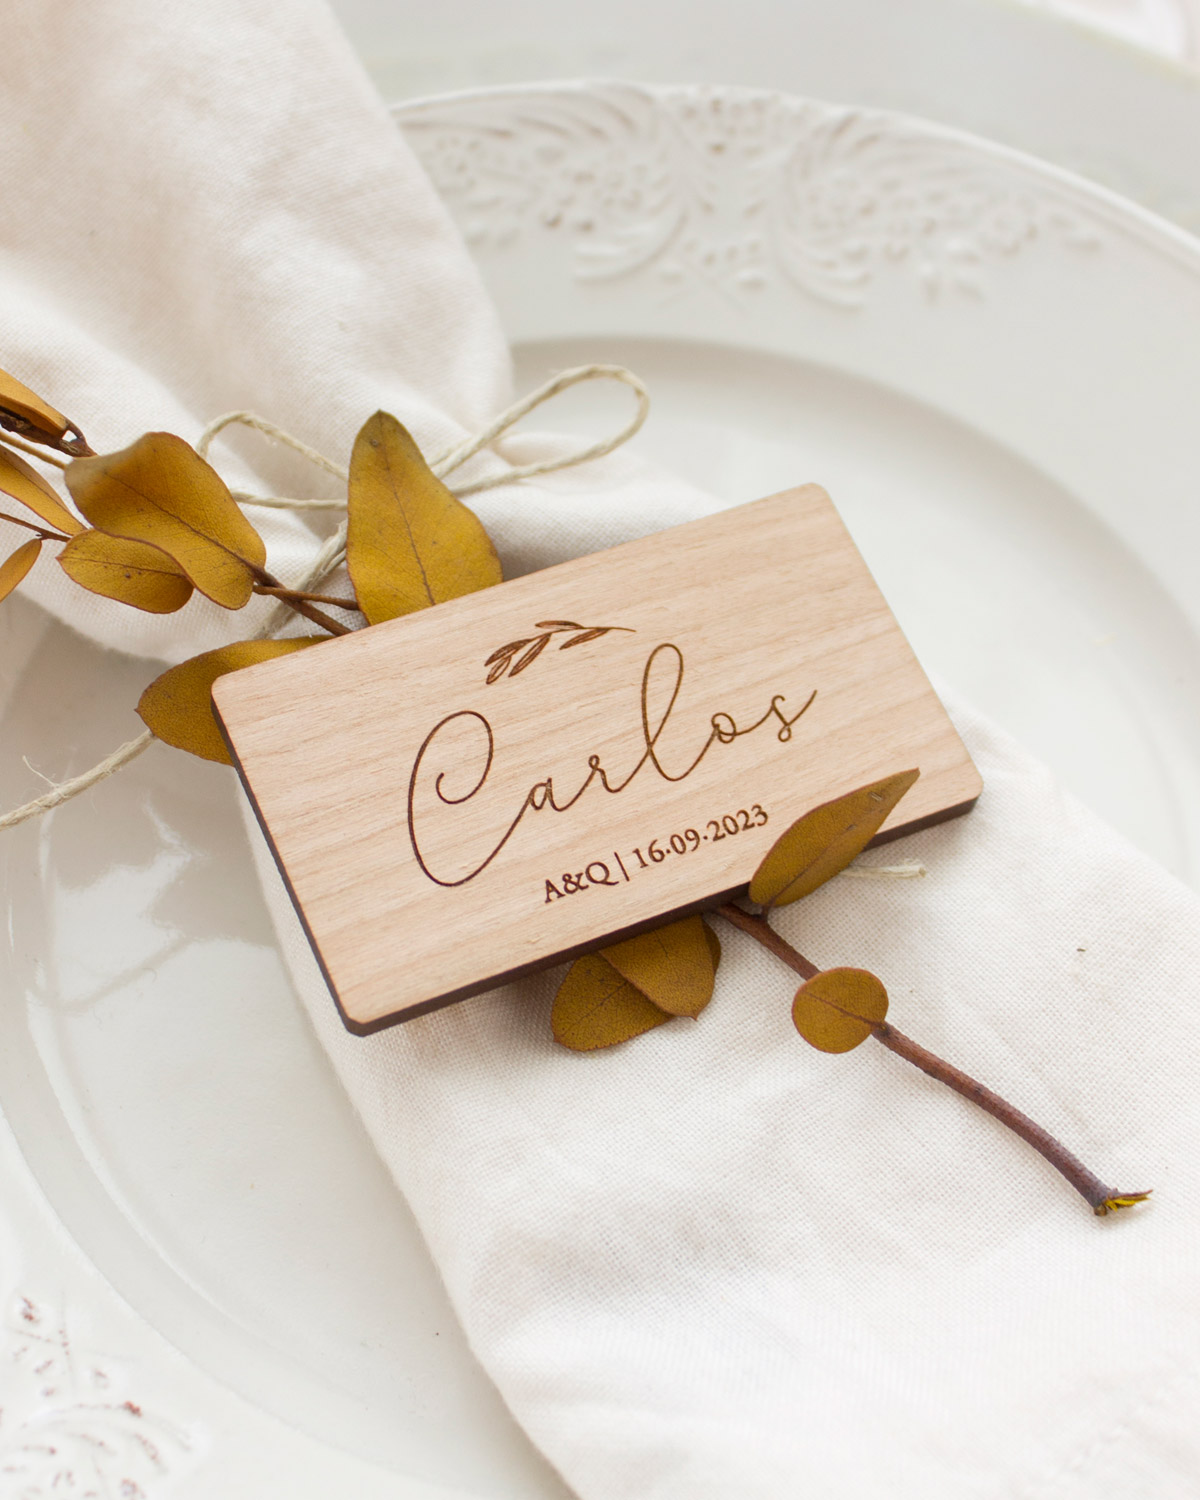 Imán rectangular con el nombre Carlos sobre el plato de un invitado de boda